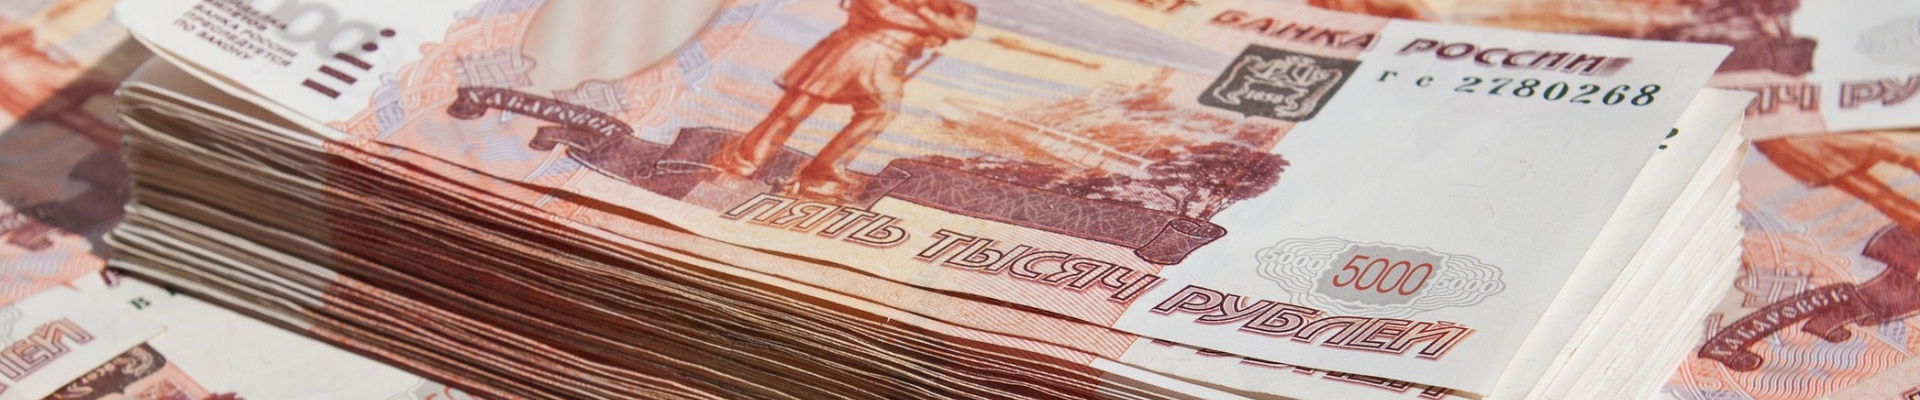 В течение марта Россия выдала разным странам кредитов на общую сумму порядка 82 миллиардов рублей